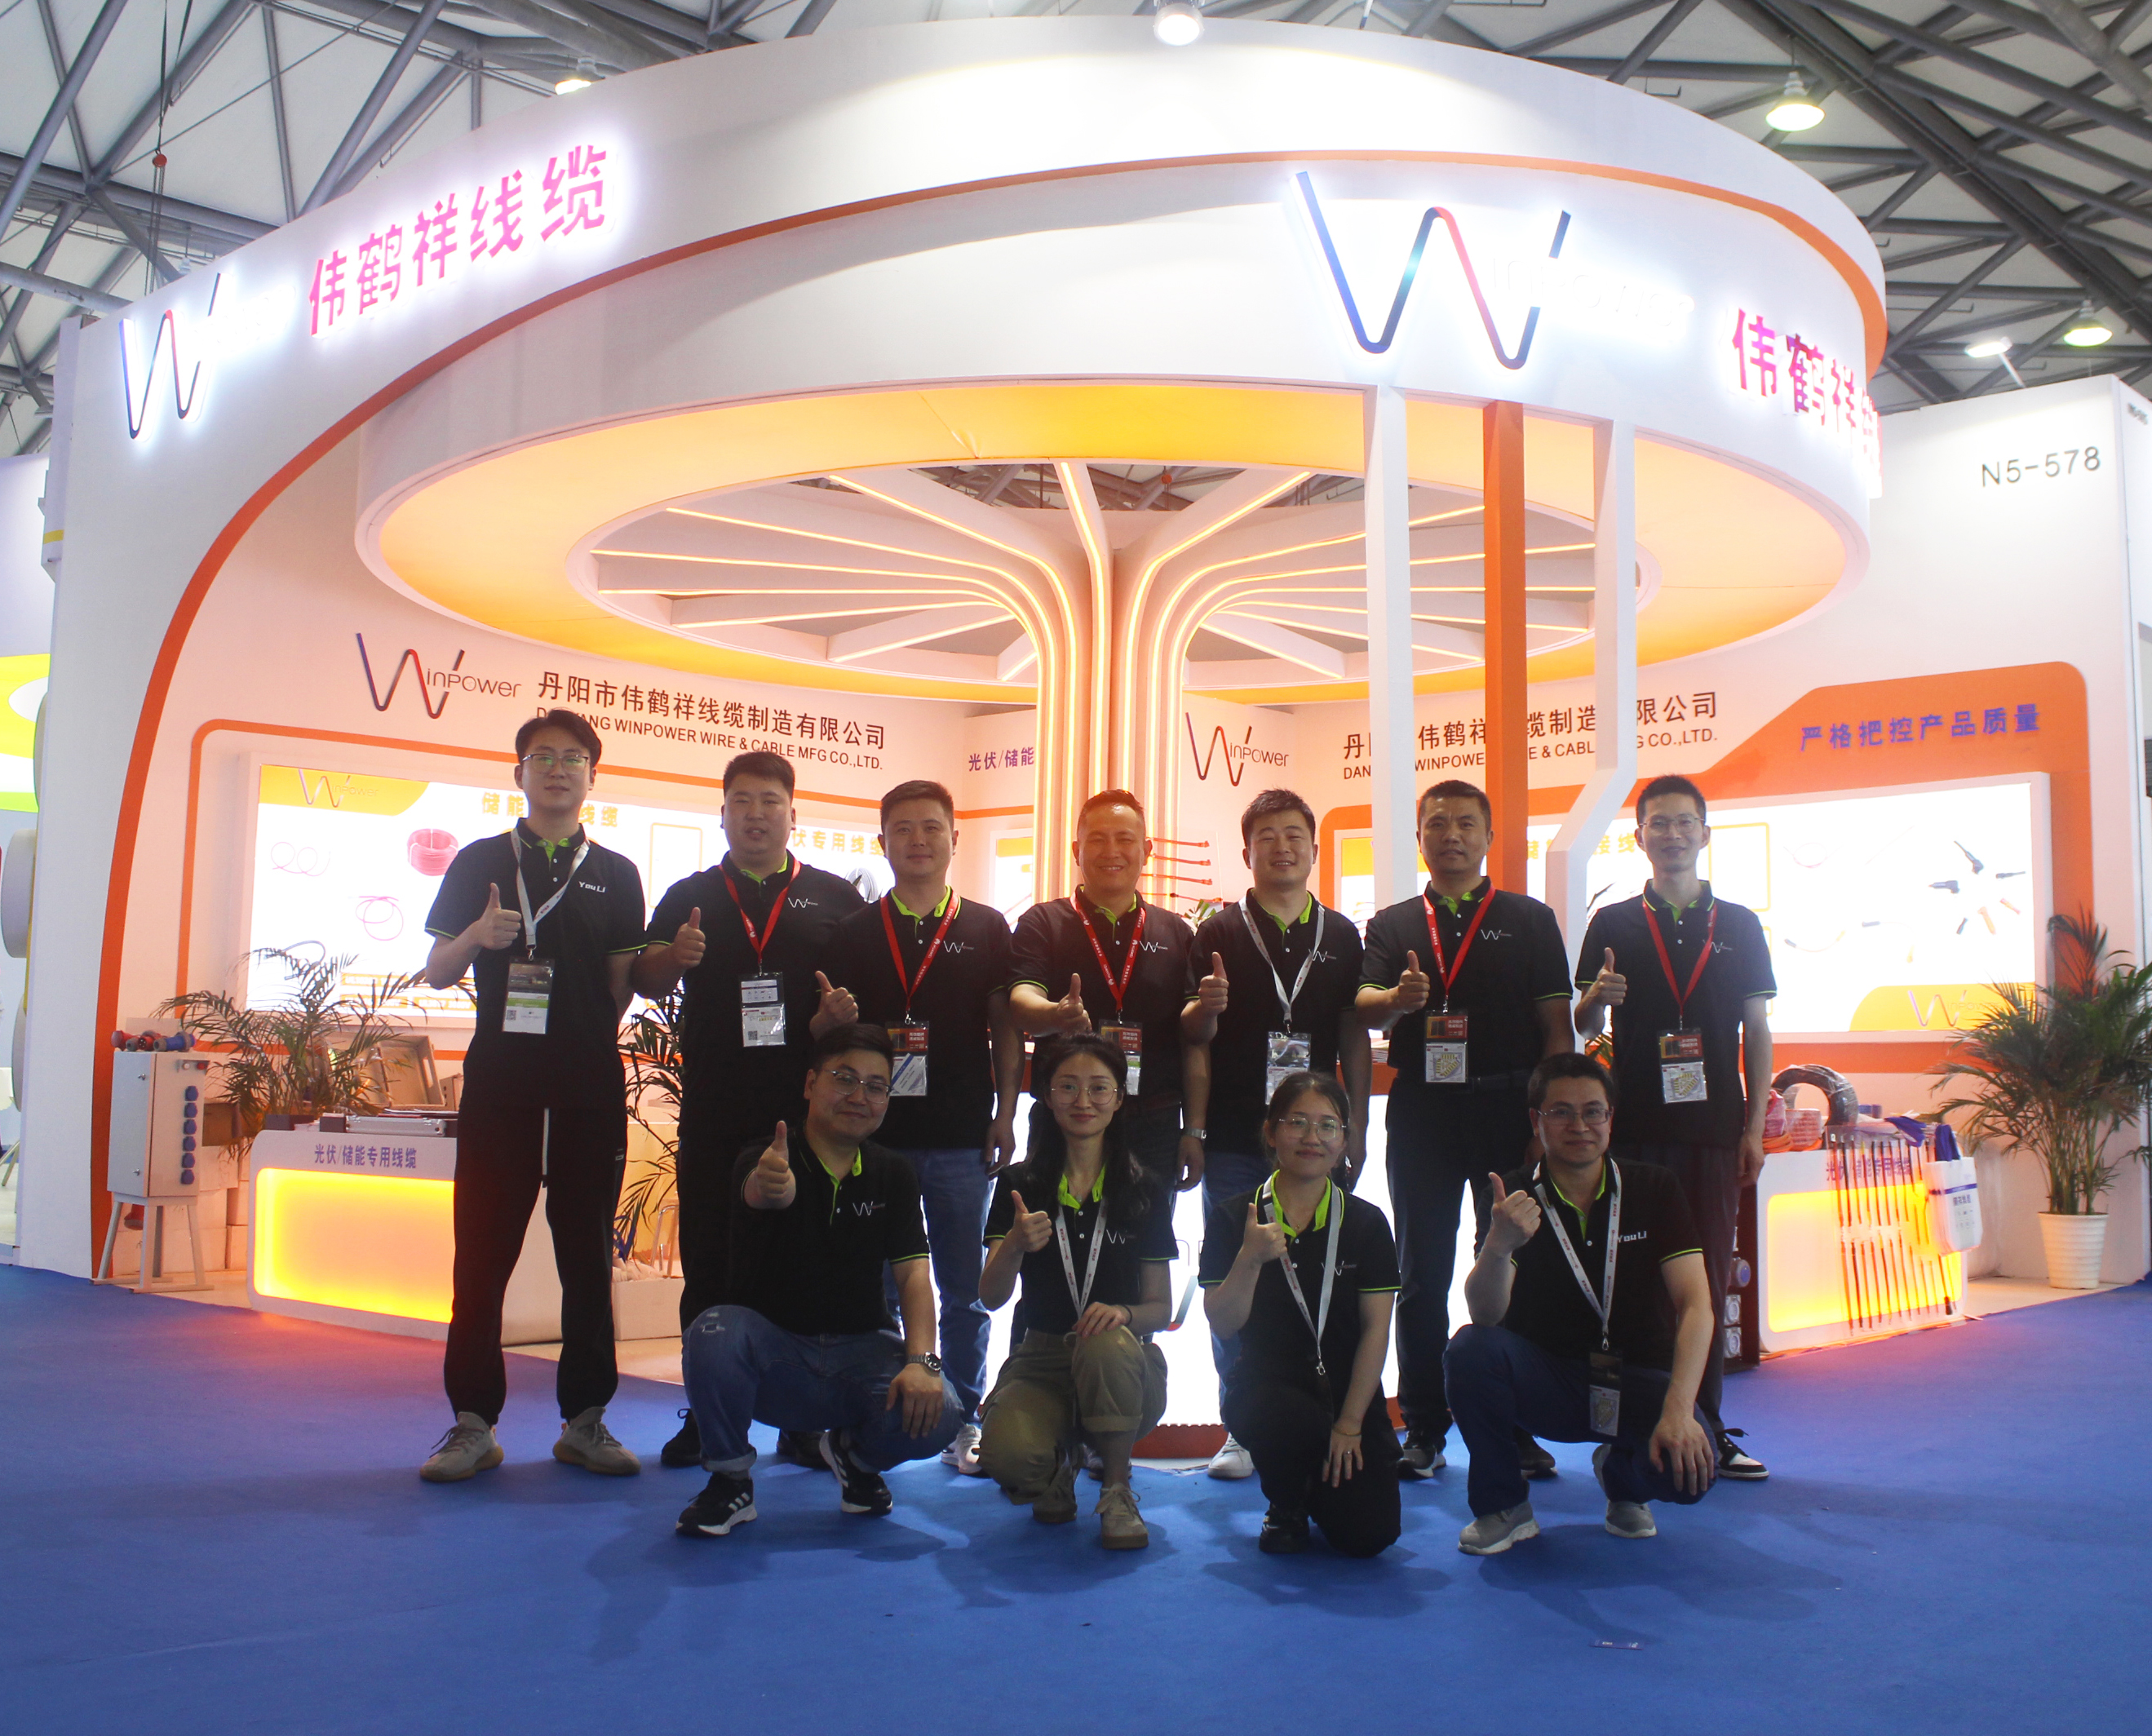 हाल ही में, तीन दिवसीय 16वां एसएनईसी अंतर्राष्ट्रीय सौर फोटोवोल्टिक और स्मार्ट एनर्जी (शंघाई) सम्मेलन और प्रदर्शनी शंघाई में संपन्न हुई।